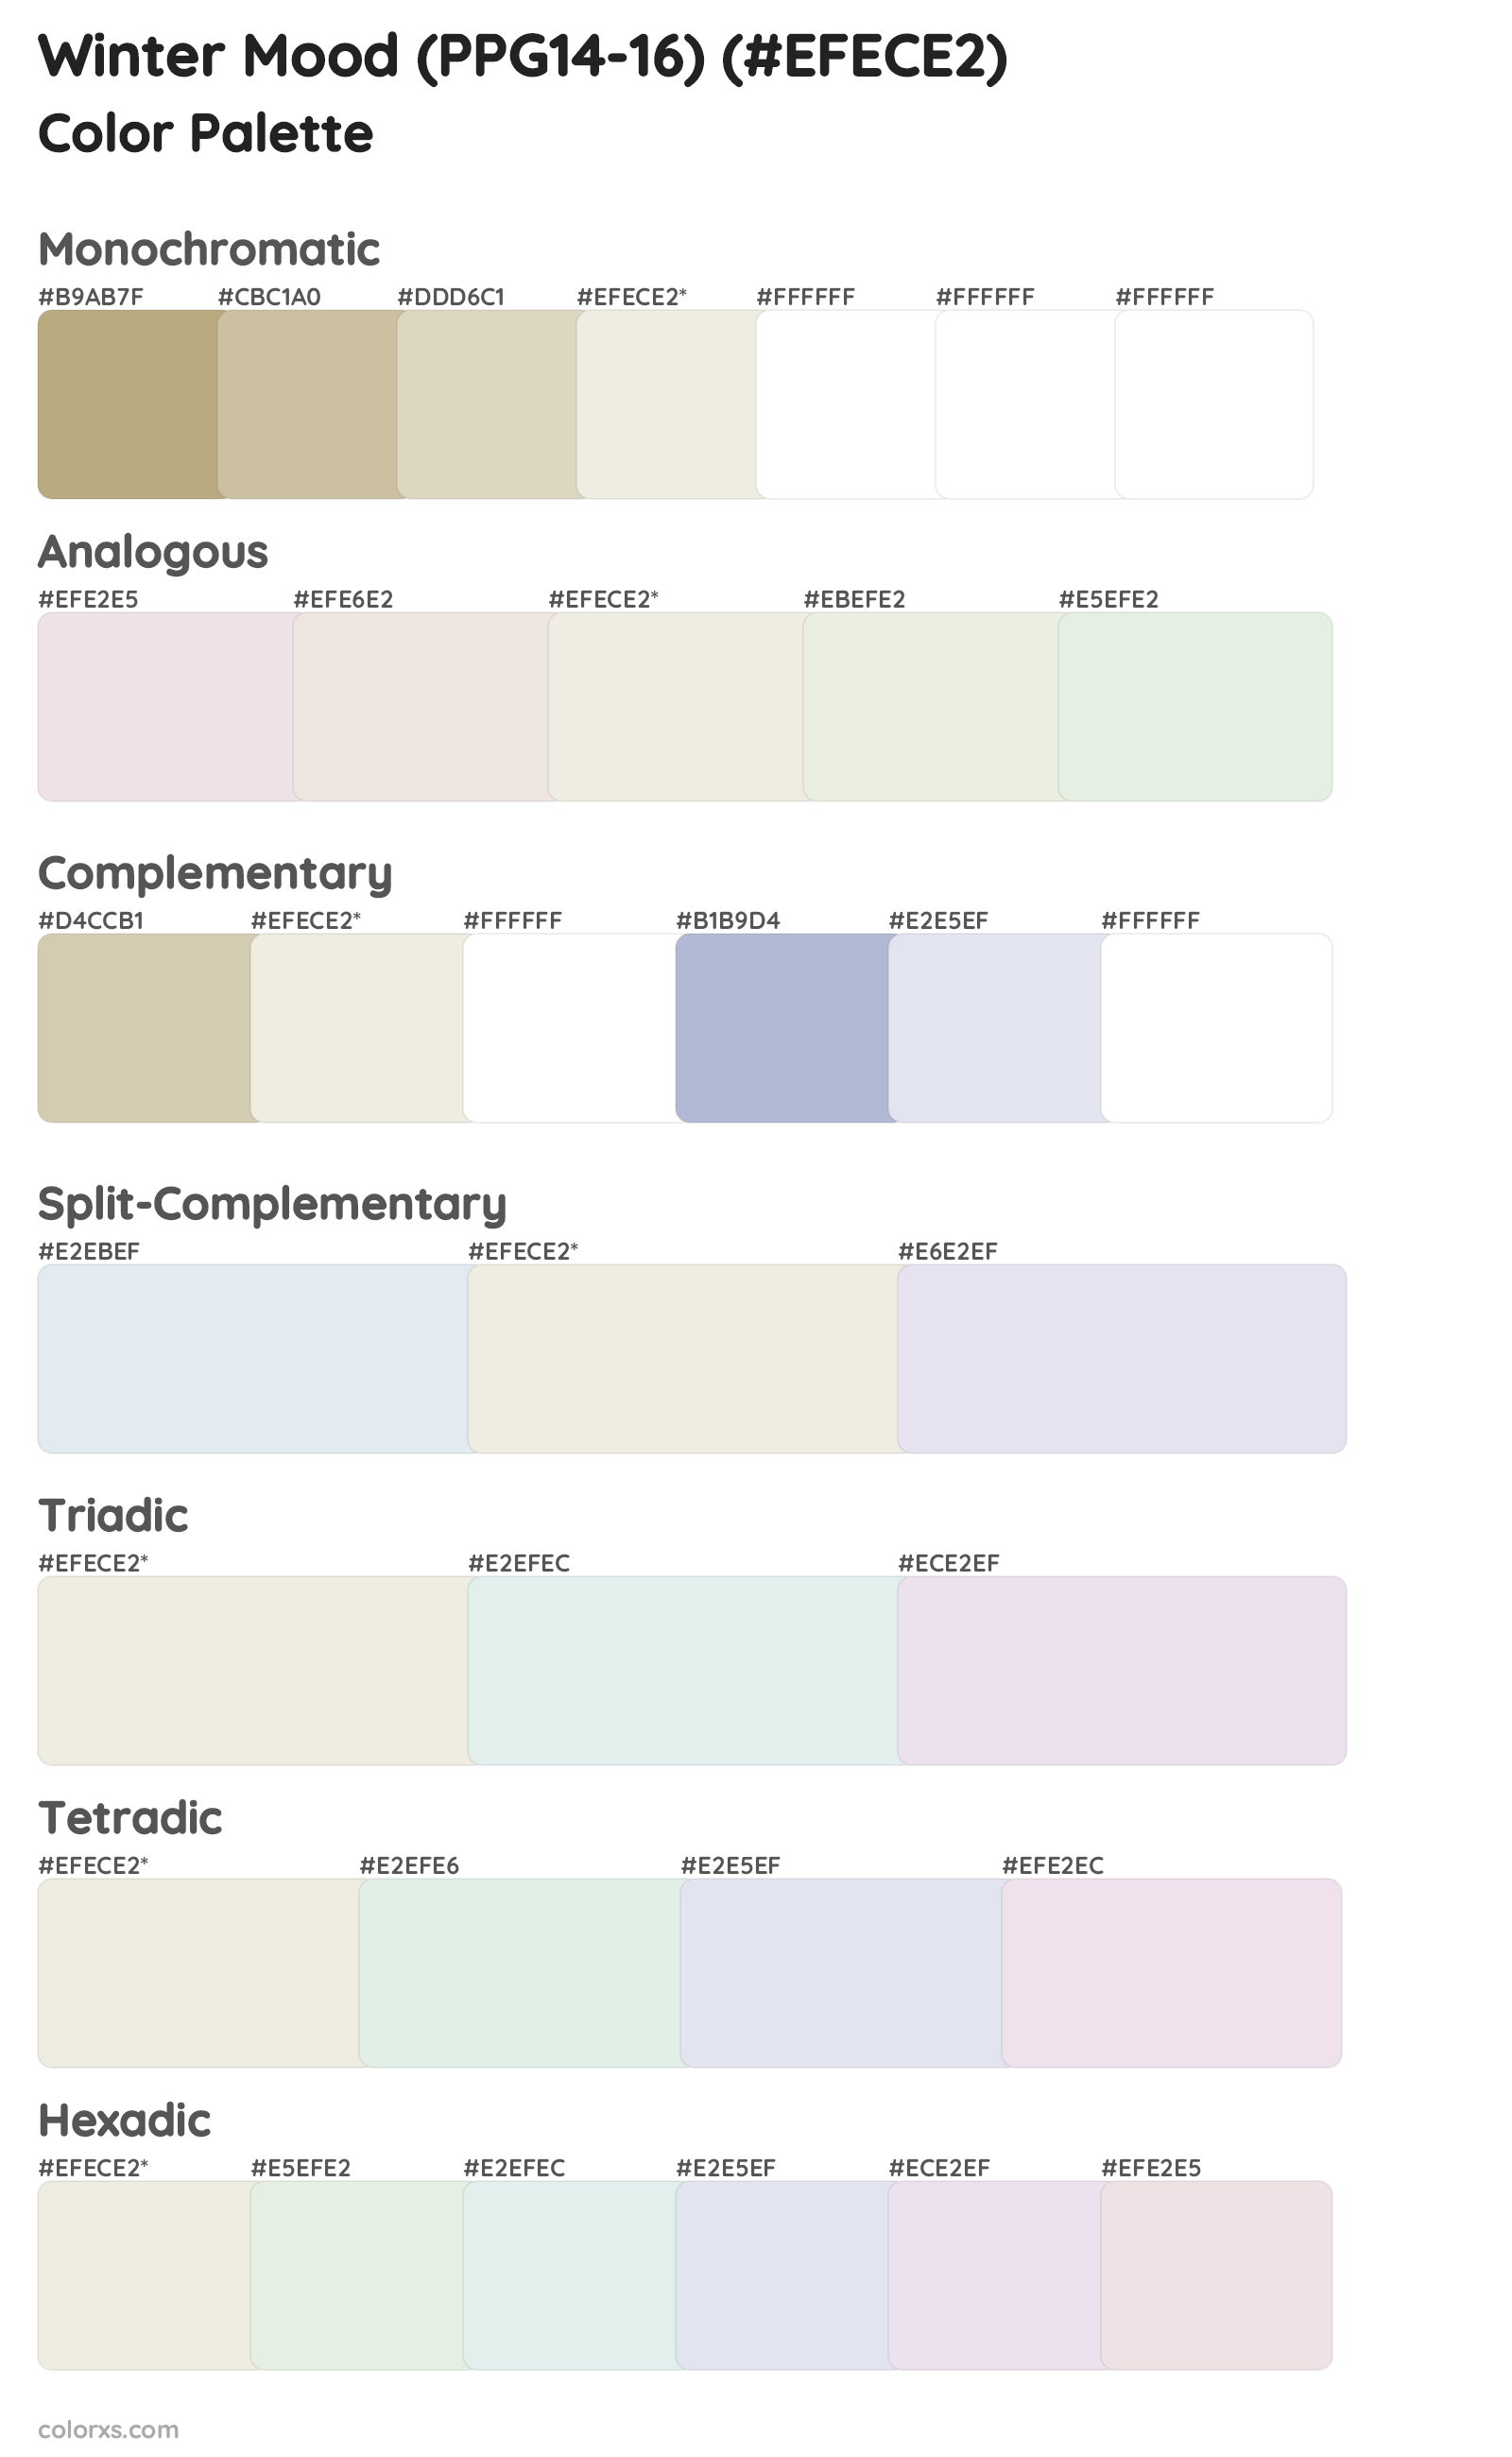 Winter Mood (PPG14-16) Color Scheme Palettes